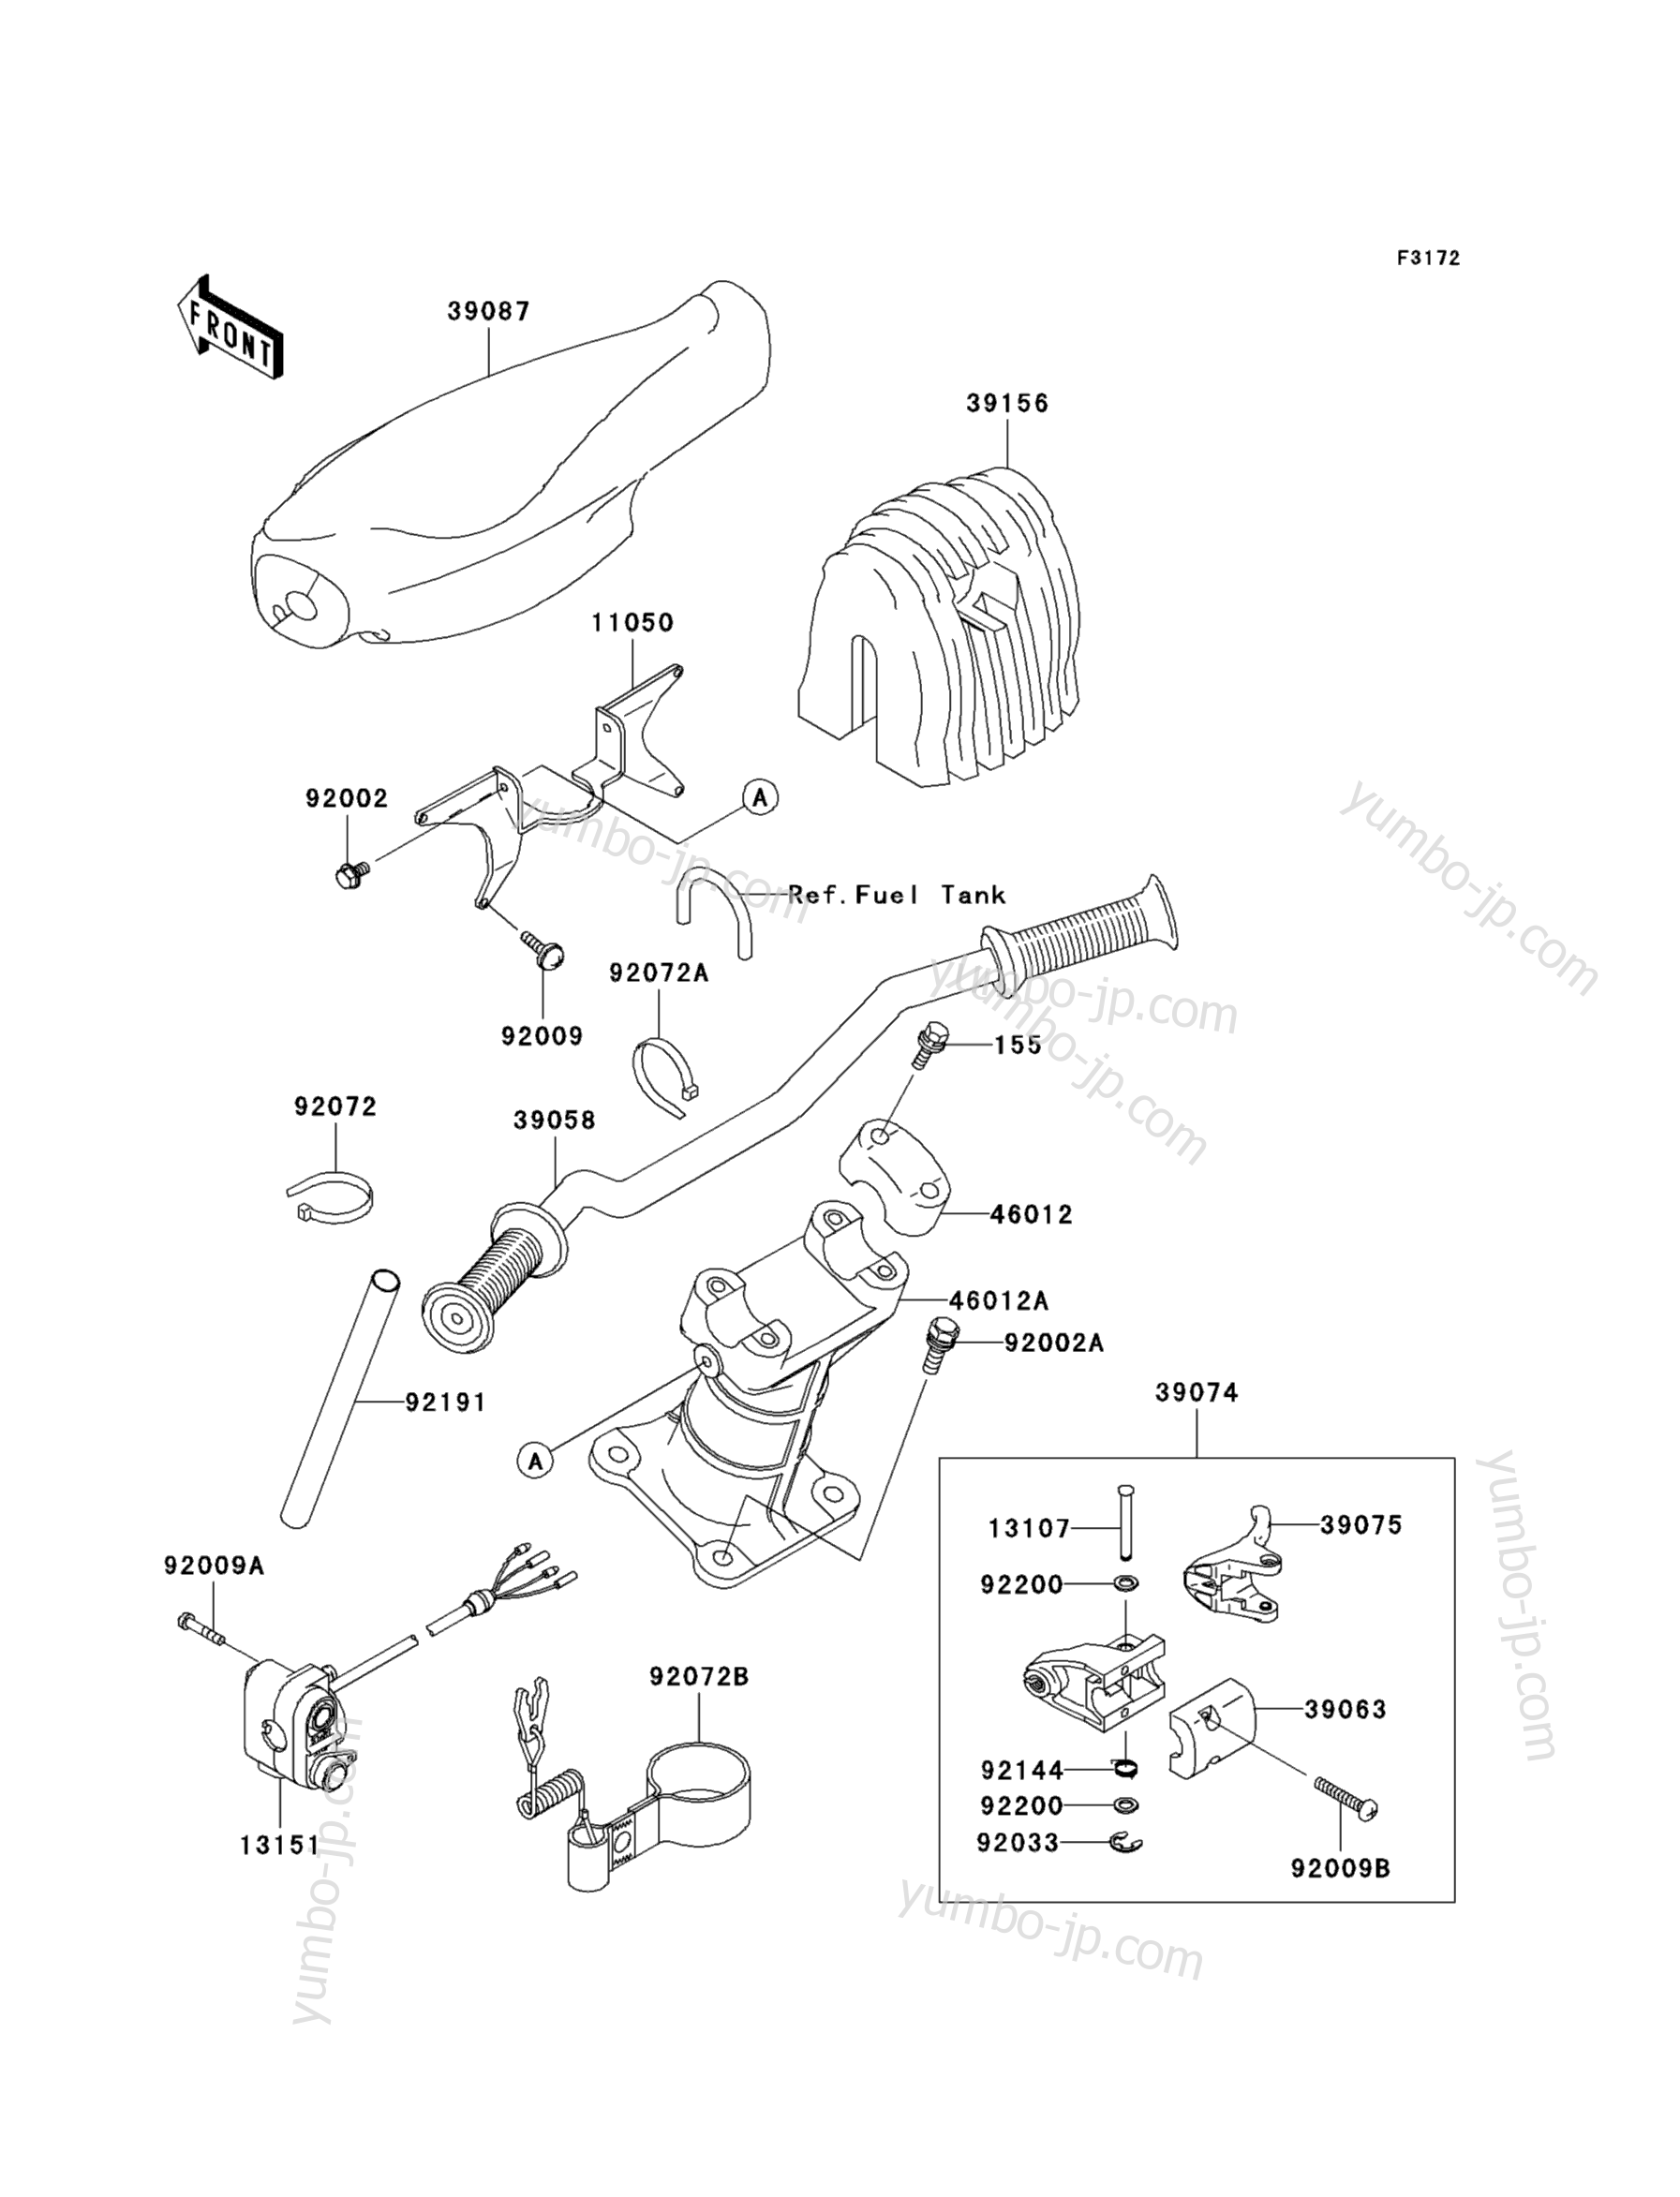 Румпель (рукоятка управления) для гидроциклов KAWASAKI JET SKI 900 STX (JT900-D1) 2003 г.